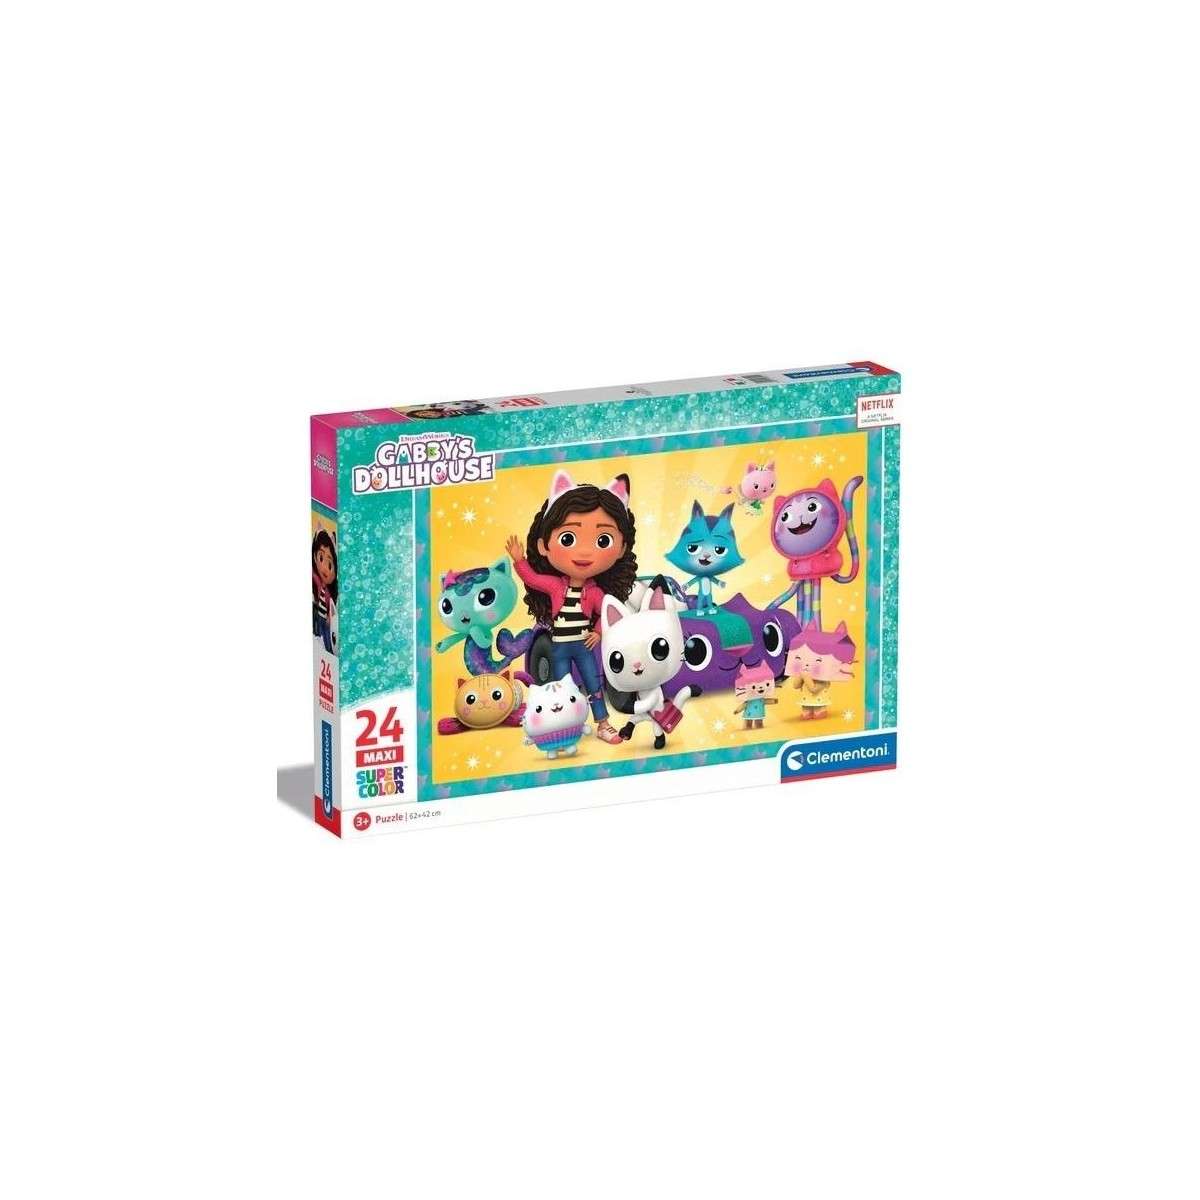 Clementoni Puzzle Super Color Maxi Gabby's Dollhouse, 24pcs. 28521